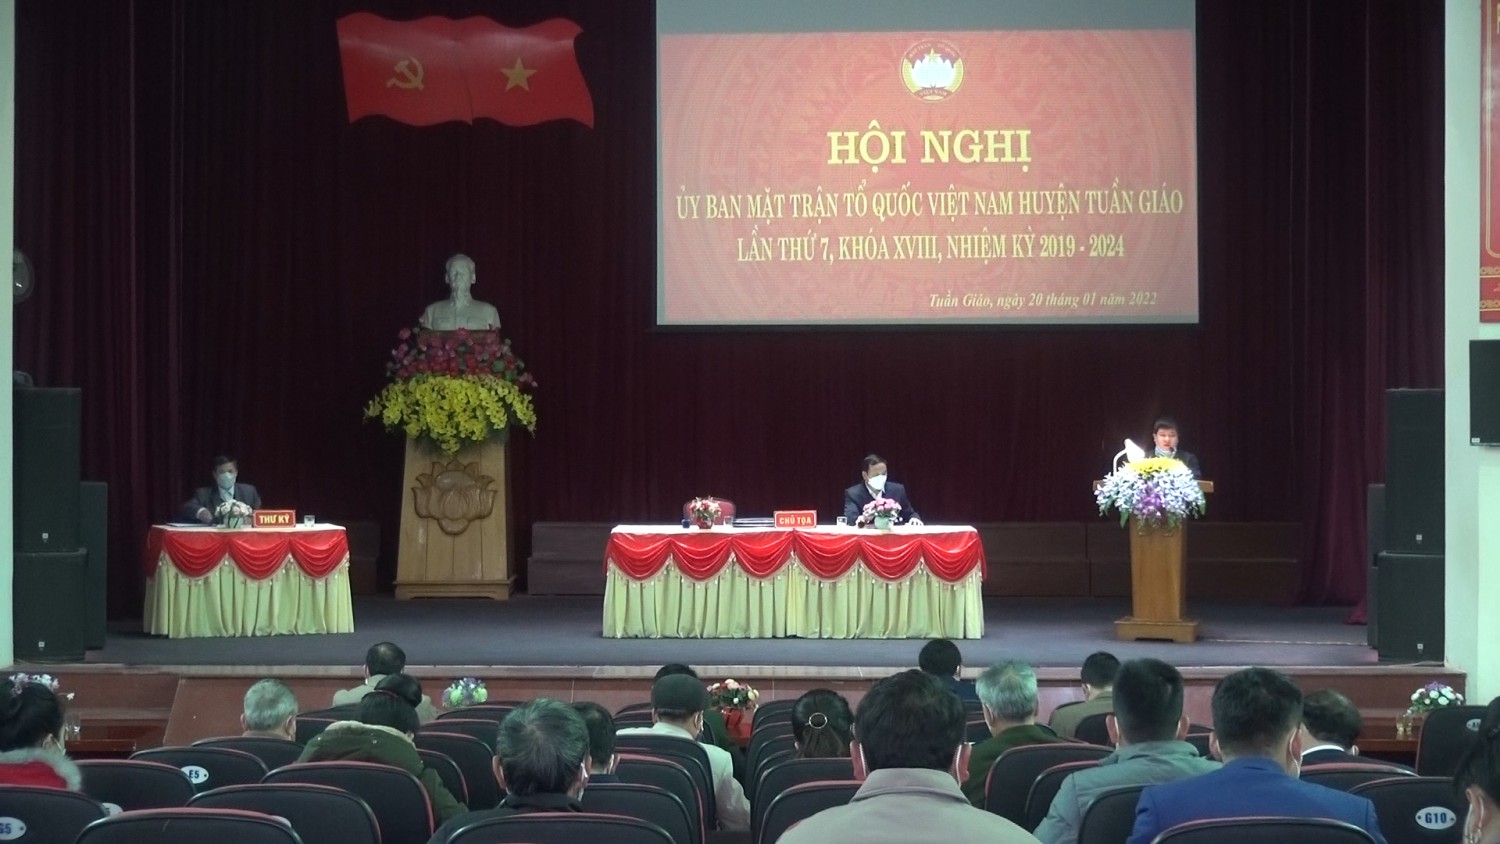 Hội nghị Uỷ ban MTTQ Việt Nam hình bầu cua tôm cá
 lần thứ 7 khoá XVIII